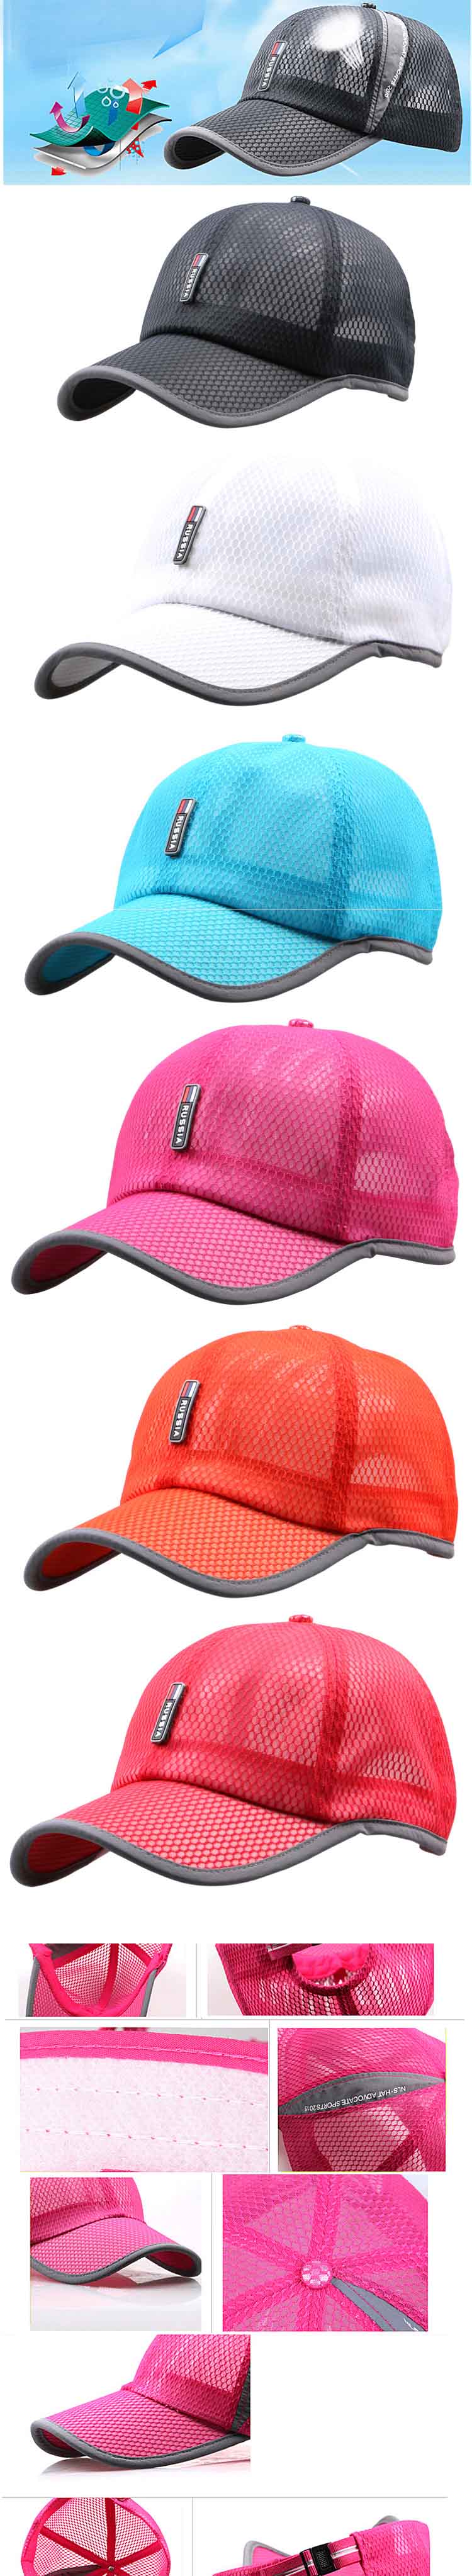 cari topi online ? di pfp store ada ratusan model topi terbaru dengan harga murah, klik dan pesan online sekarang juga